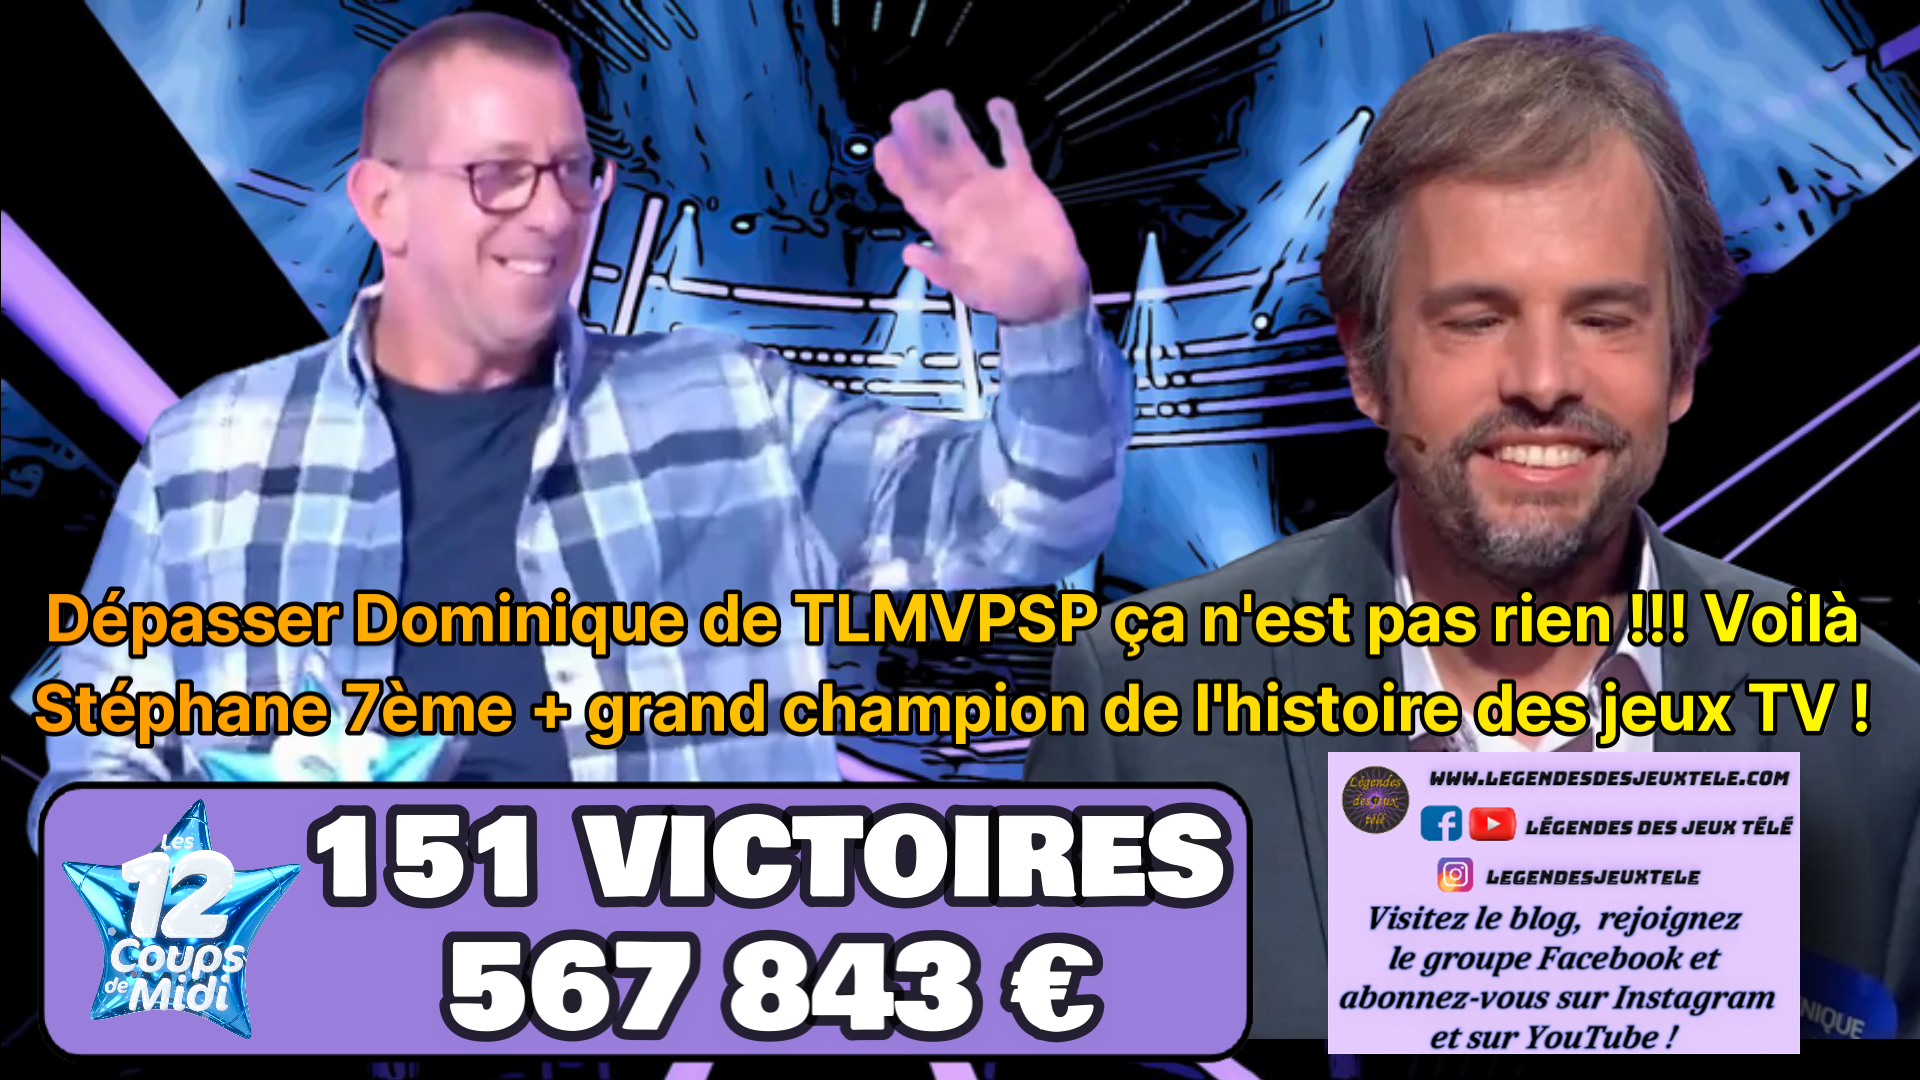 Stéphane devient 7<sup>ème</sup> + grand de tous les champions en dépassant Dominique de TLMVPSP !